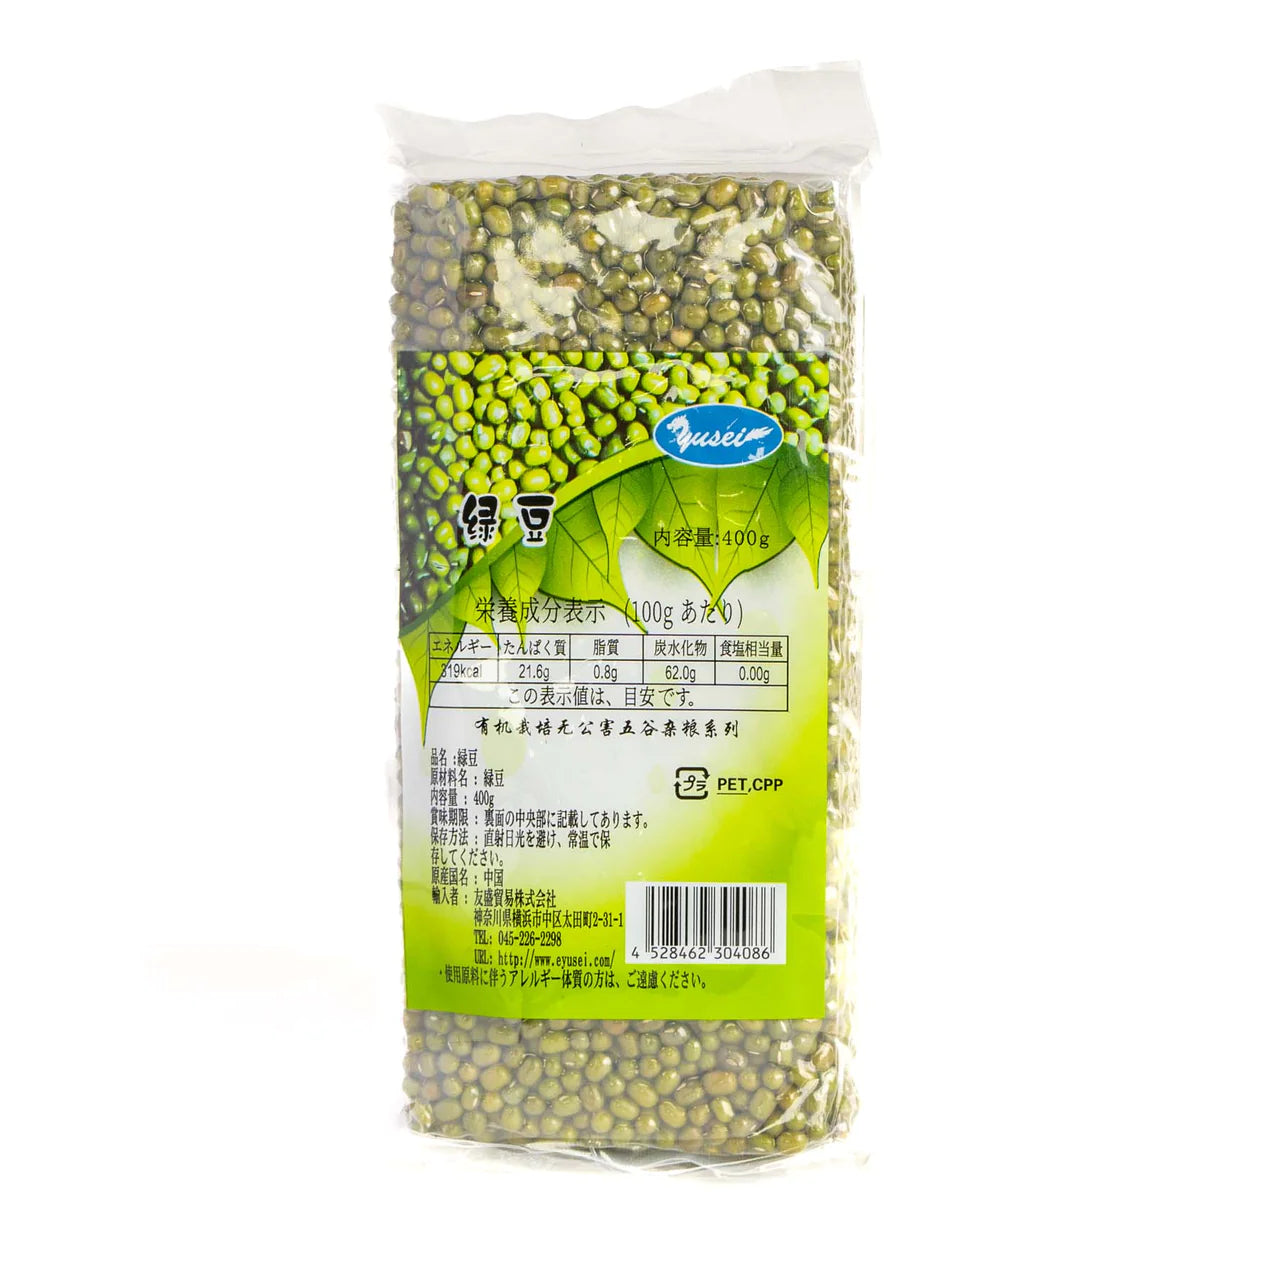 友盛 厳選緑豆 400g Mung Beans